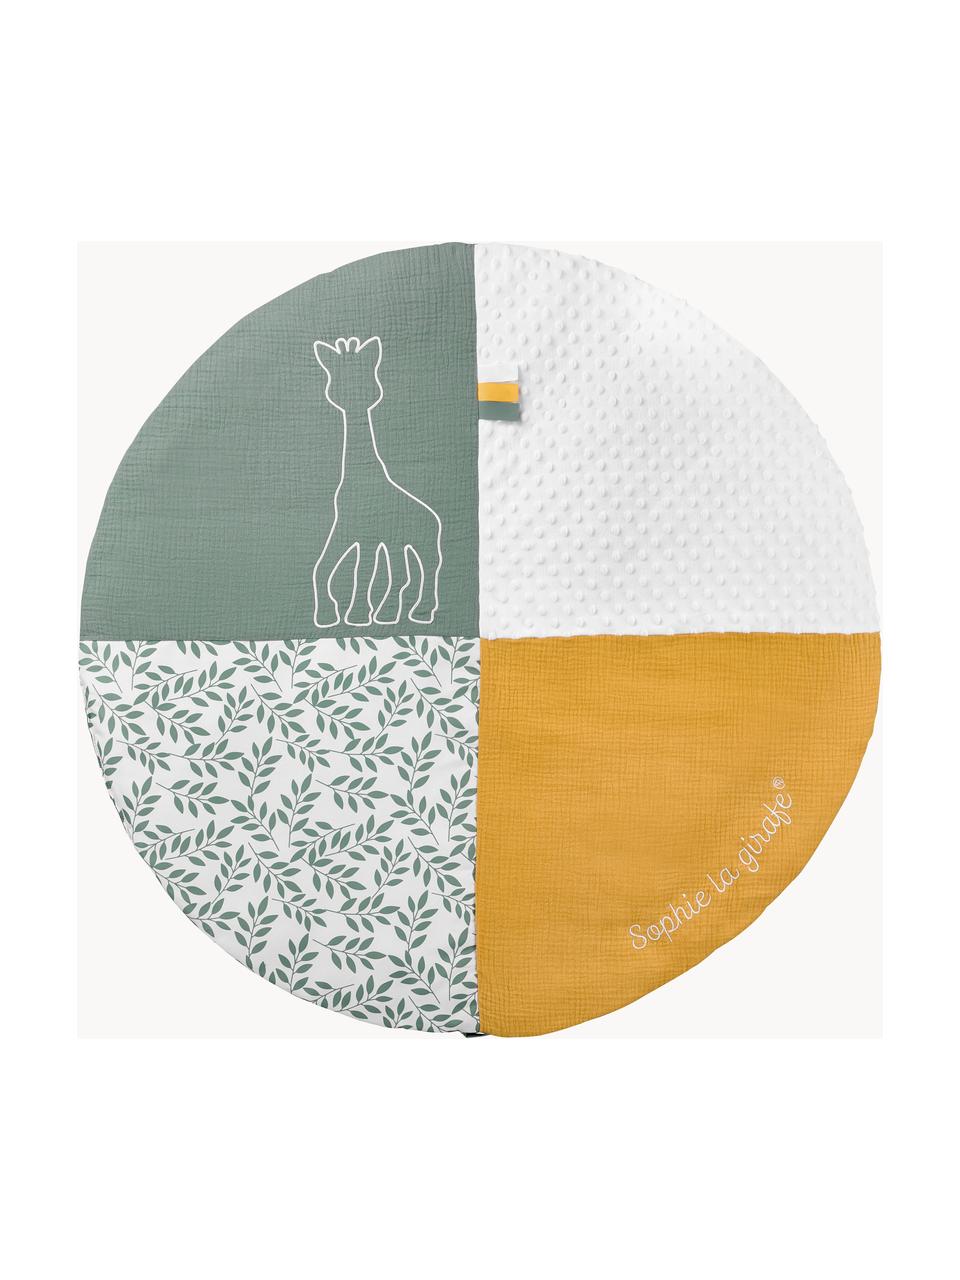 Krabbeldecke Sophie la girafe mit Activity-Bogen, 90 % Polyester, 10 % Baumwolle, Weiss, Gelb, Salbeigrün, Ø 90 x H 53 cm